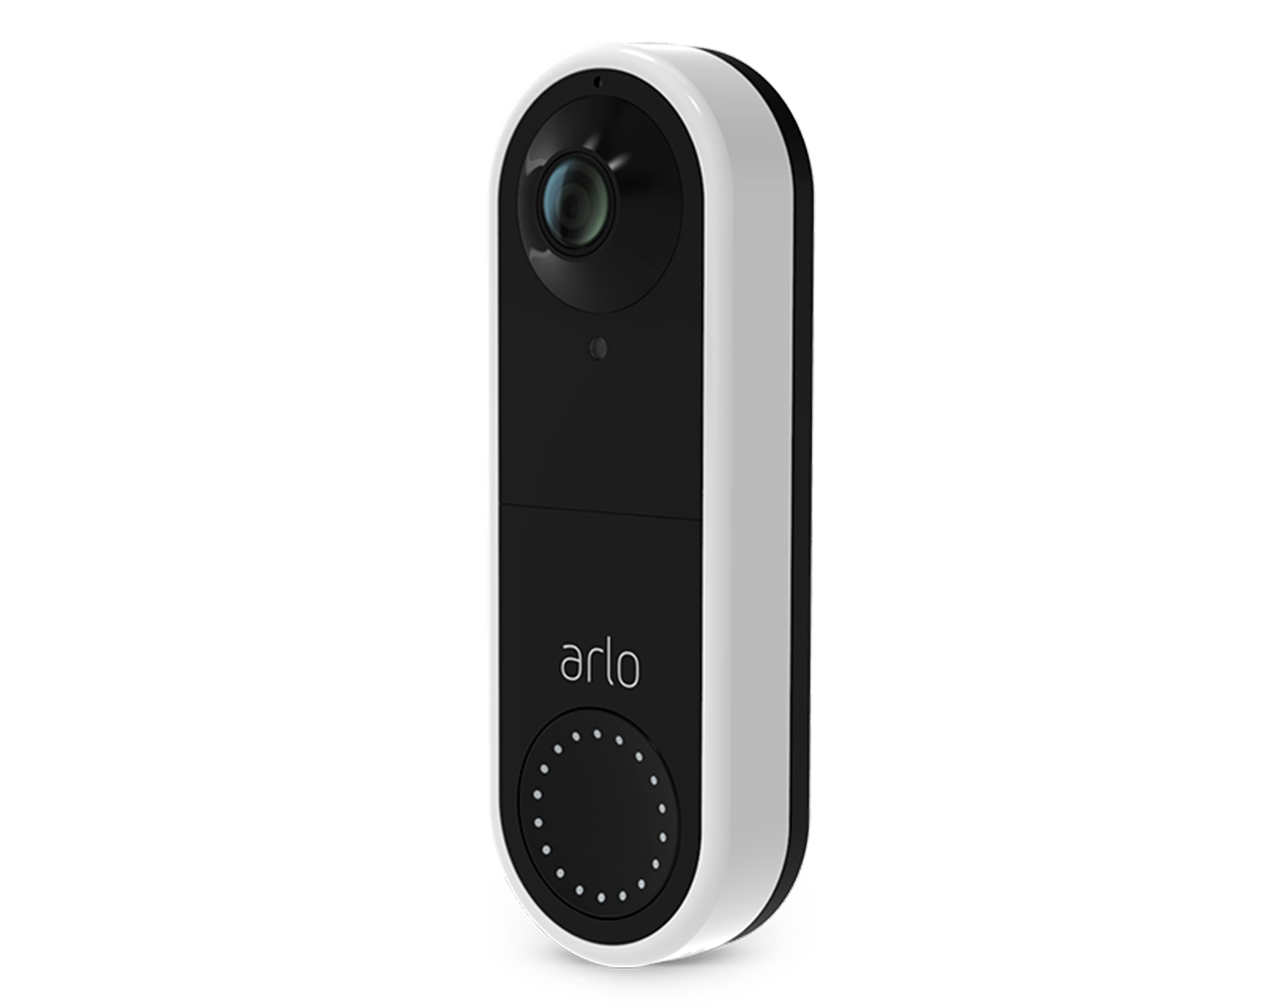 Arlo | Support | Arlo Video Doorbell